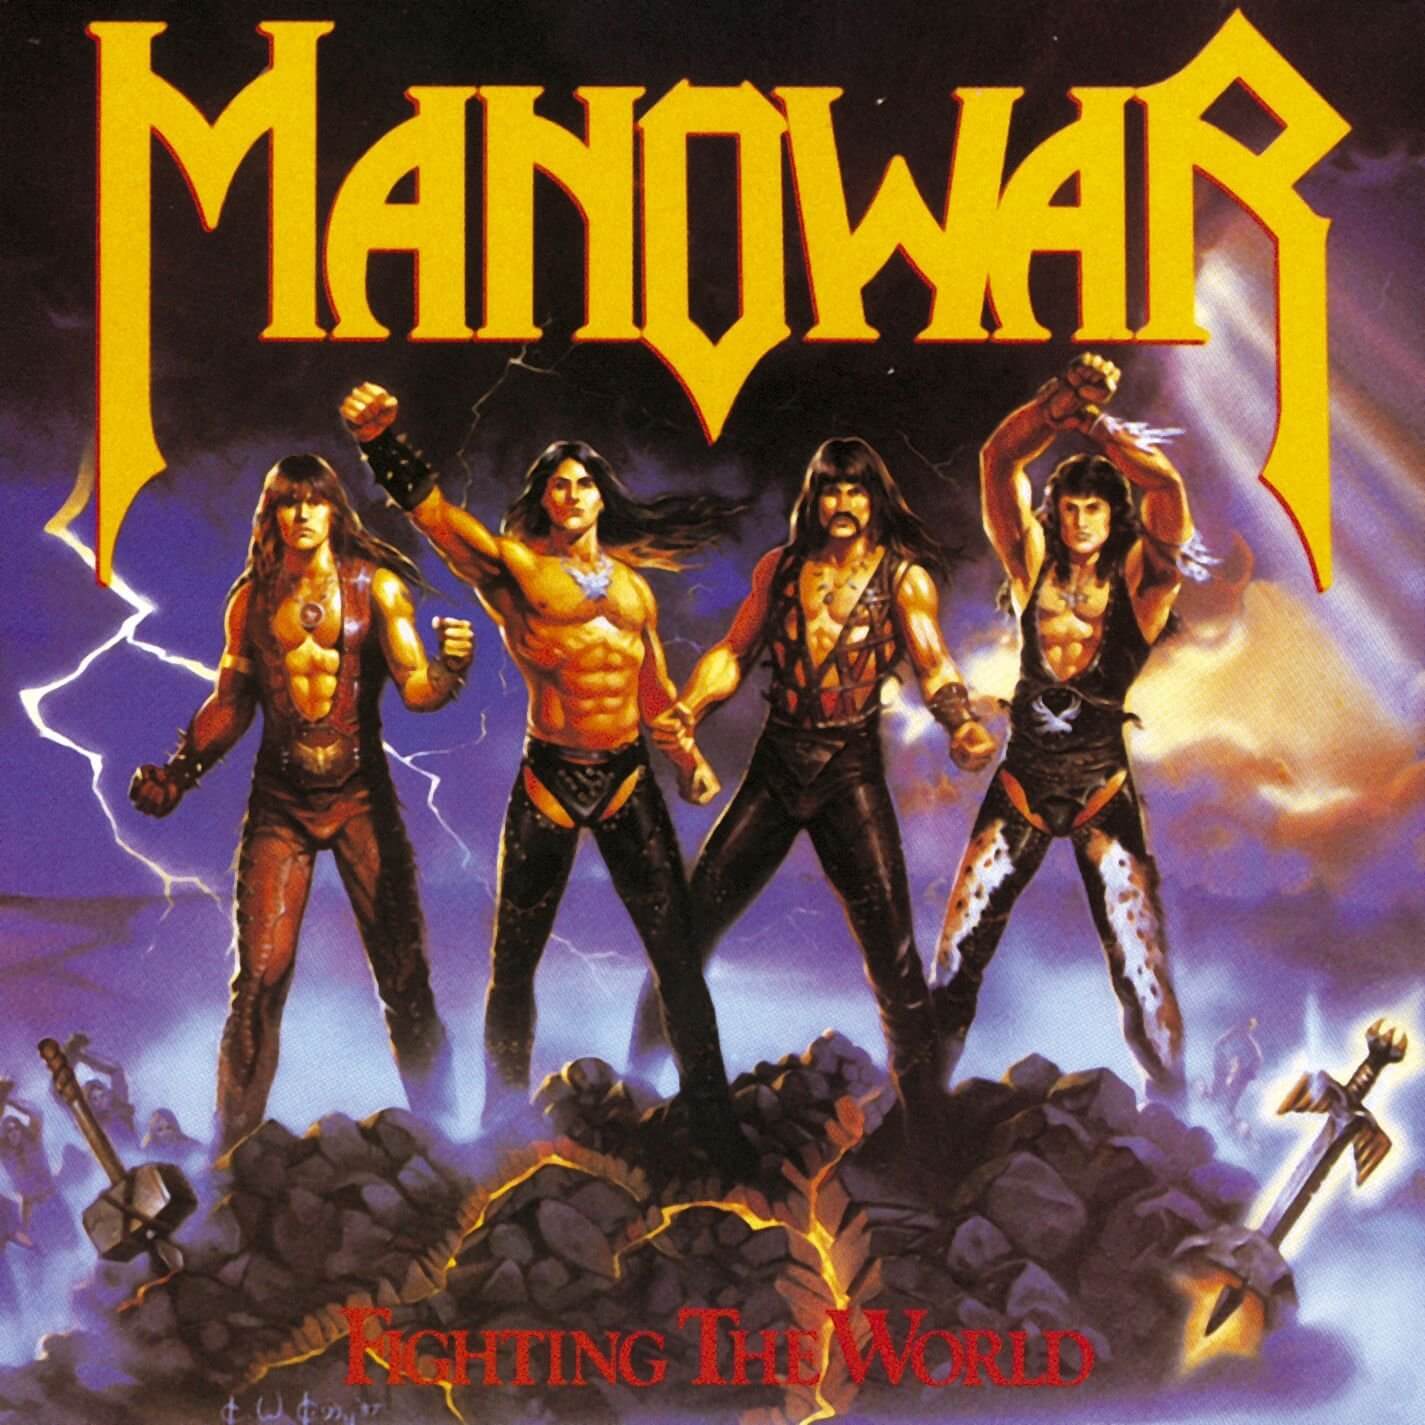 Manowar – Fighting the World